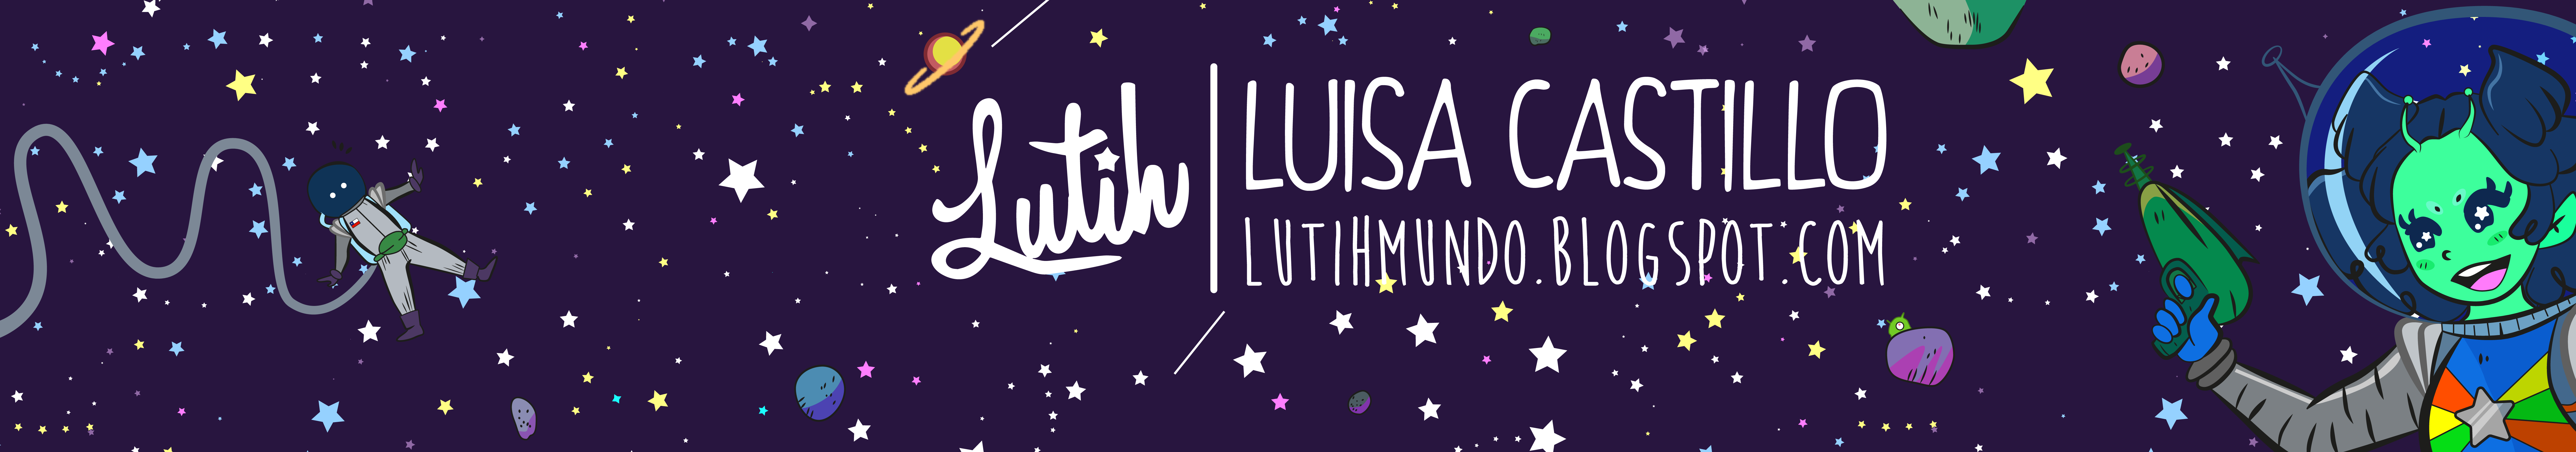 Bannière de profil de Luisa Castillo